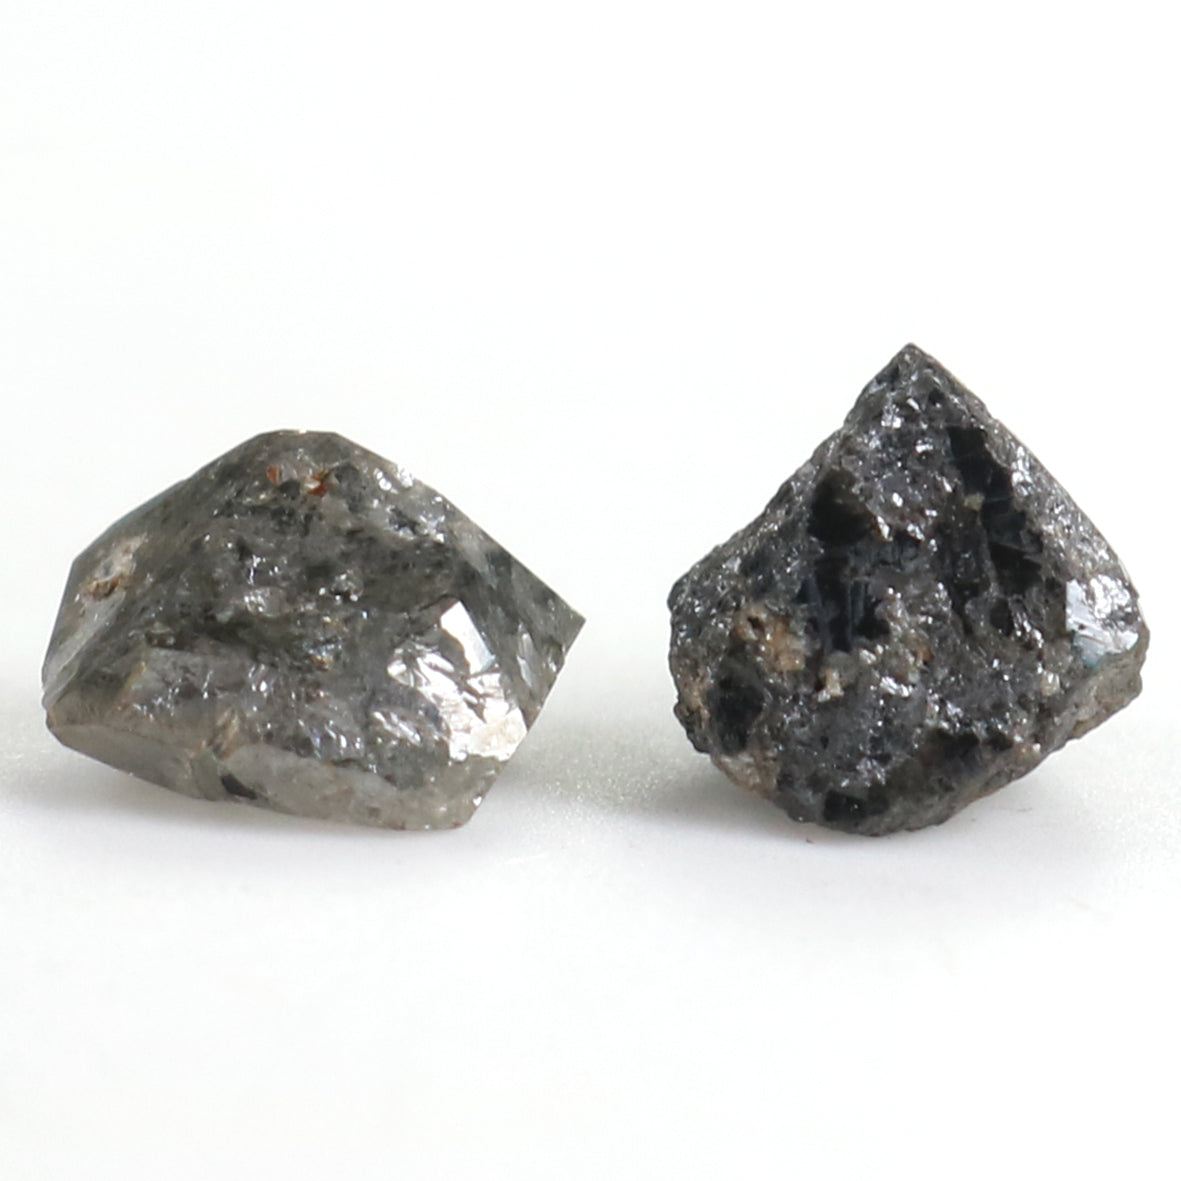 Natural Loose Rough Salt And Pepper Diamond Black Grey Color 2.75 CT 6.23 MM Rough Facet Shape Diamond KR2467